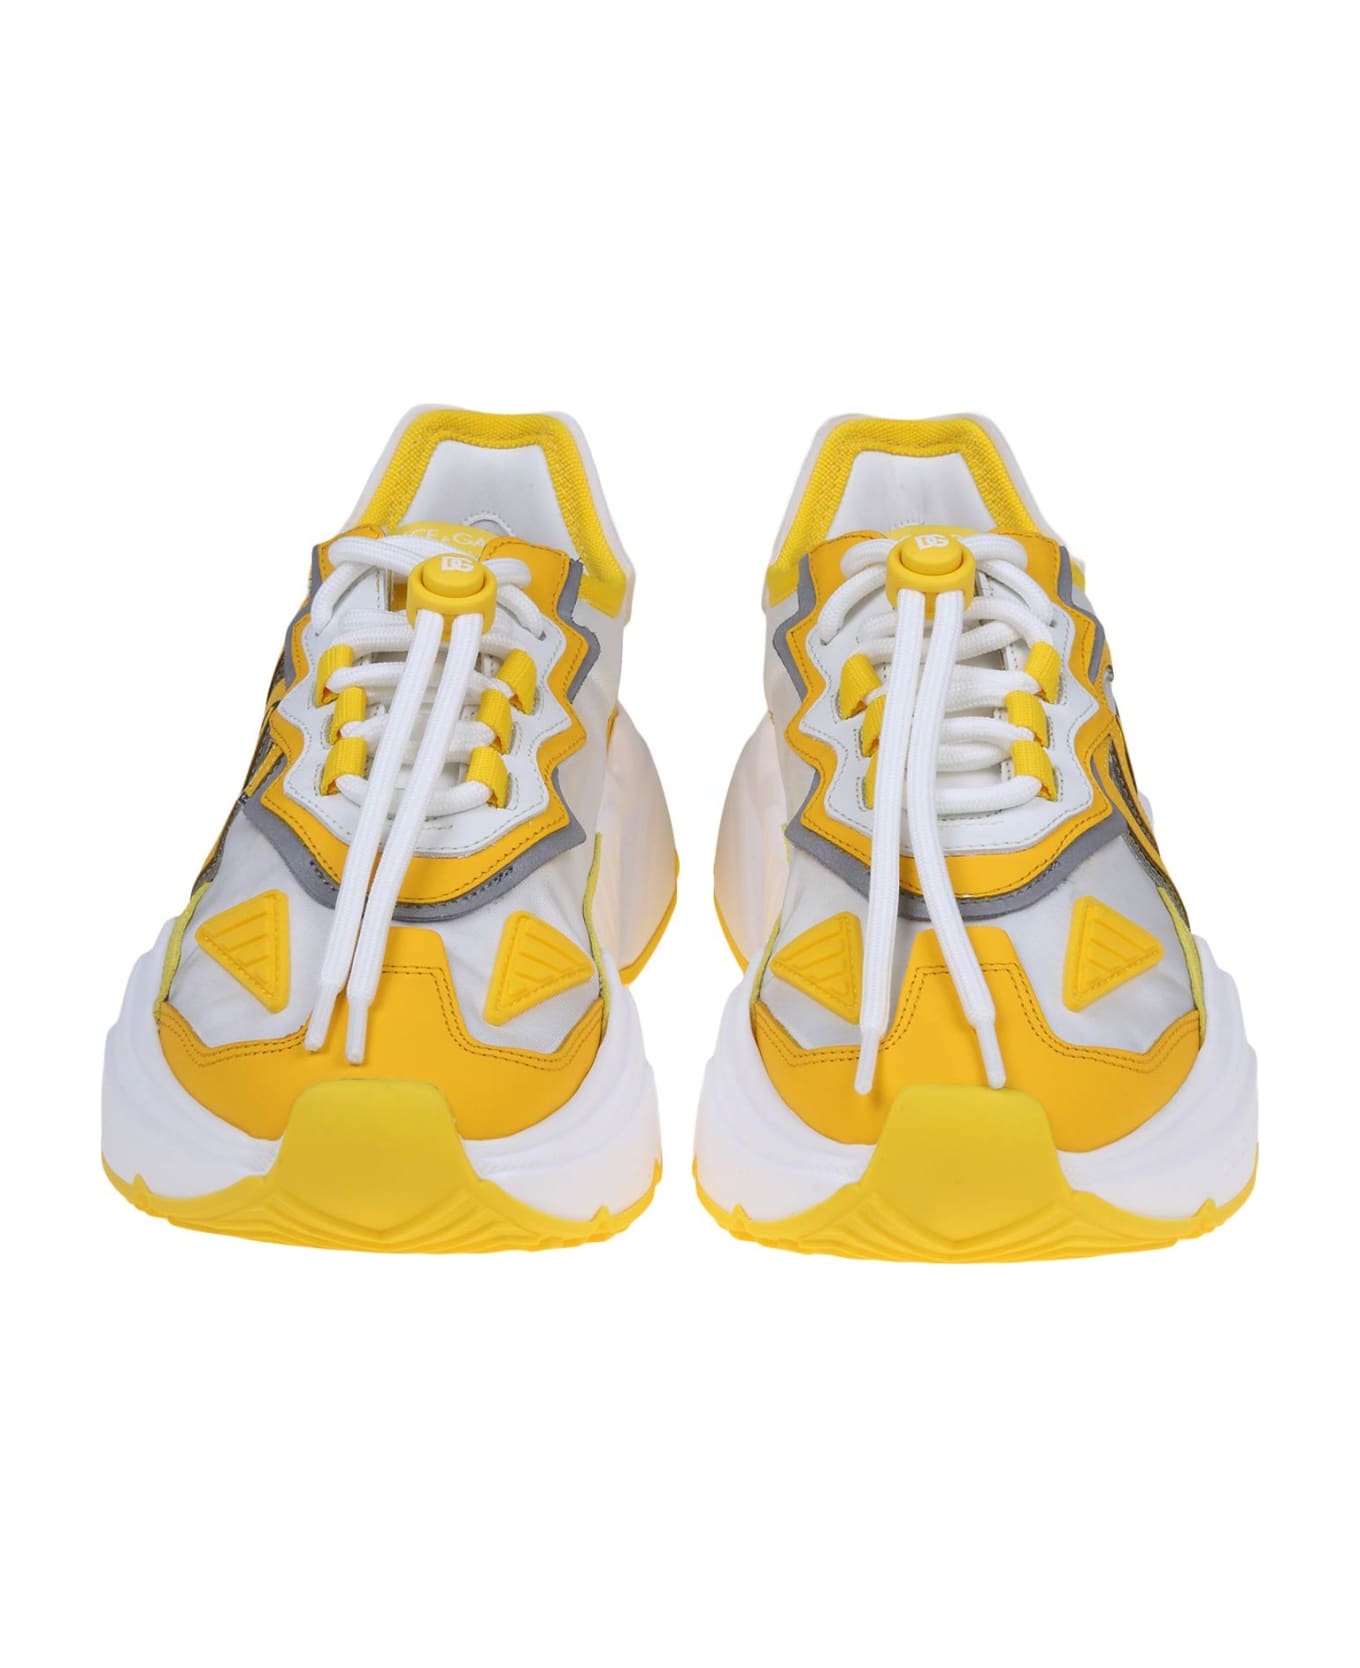 Dolce & Gabbana Daymaster Sneakers - Lemon スニーカー